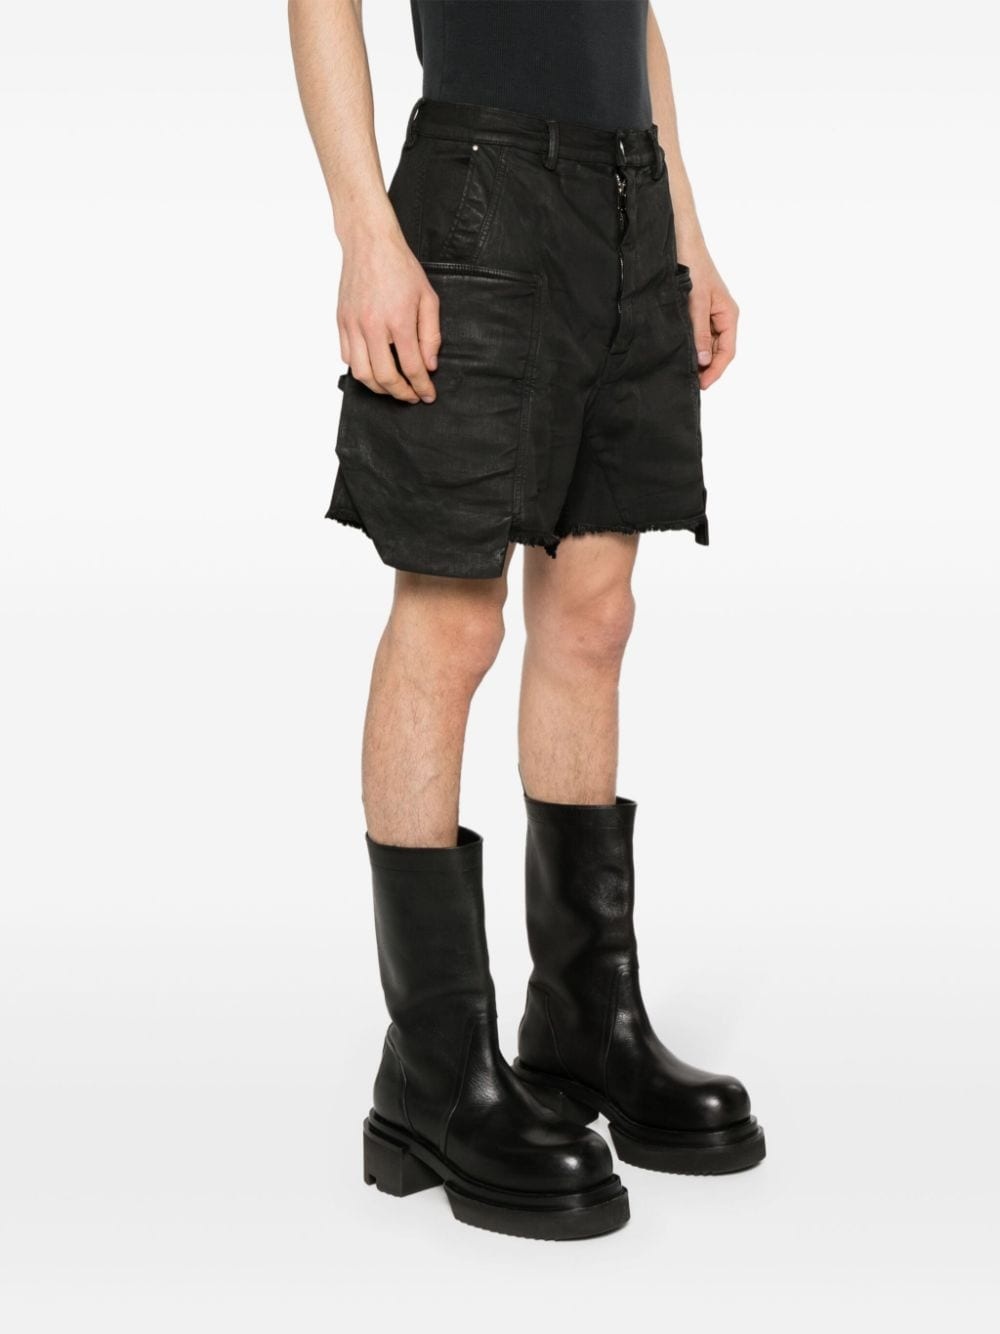 Stefan cargo shorts - 3